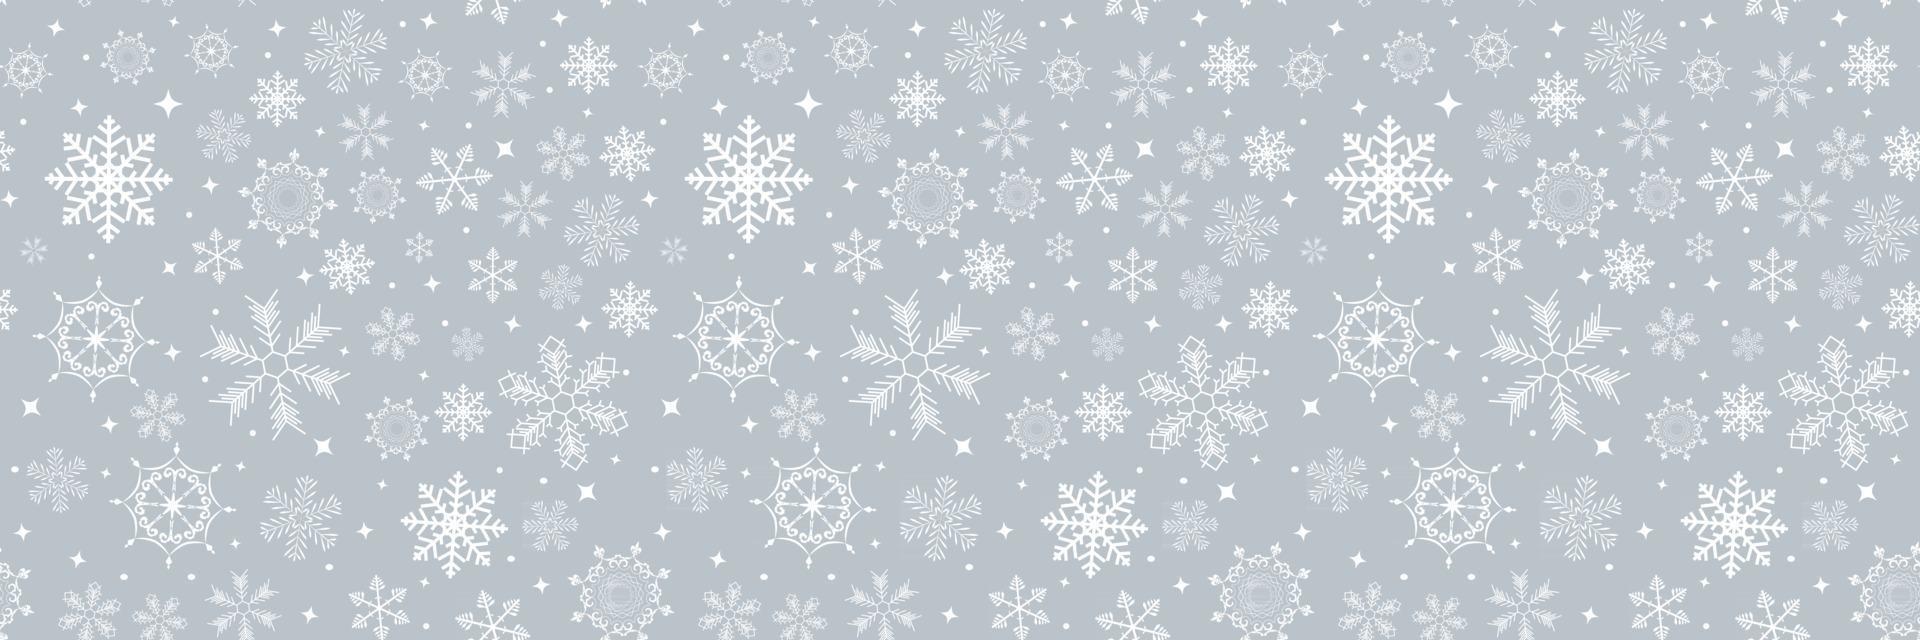 abstrakt vinter design sömlös bakgrund med snöflingor för jul och nyår affisch vektor